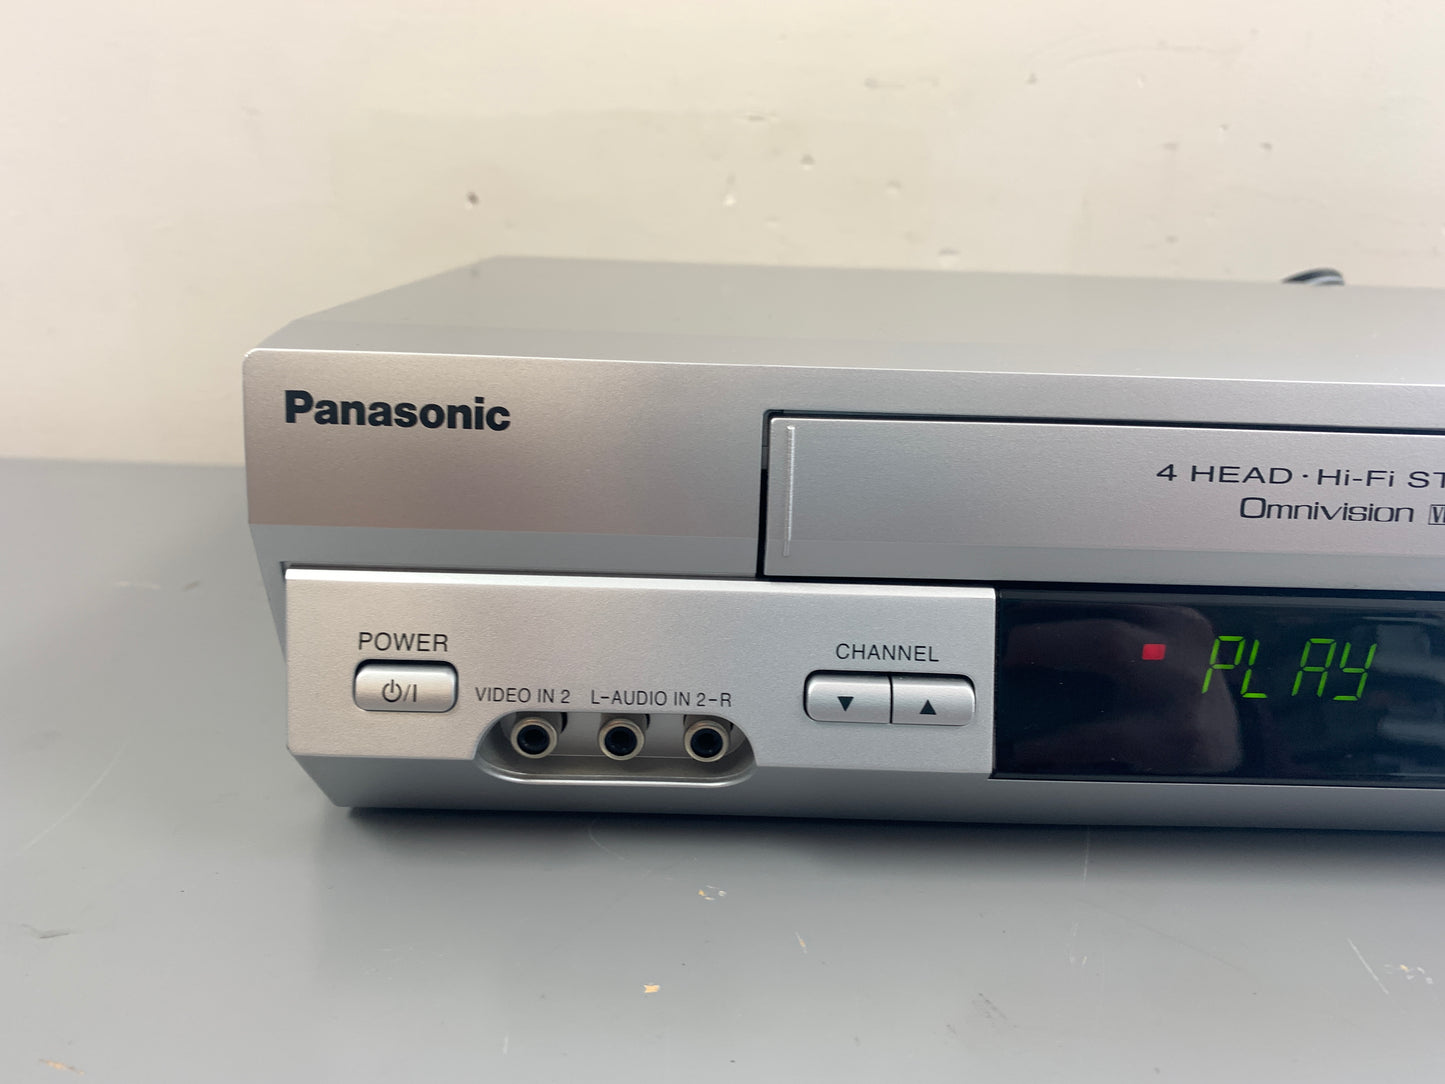 Panasonic PV-V4525S Video Cassette Recorder